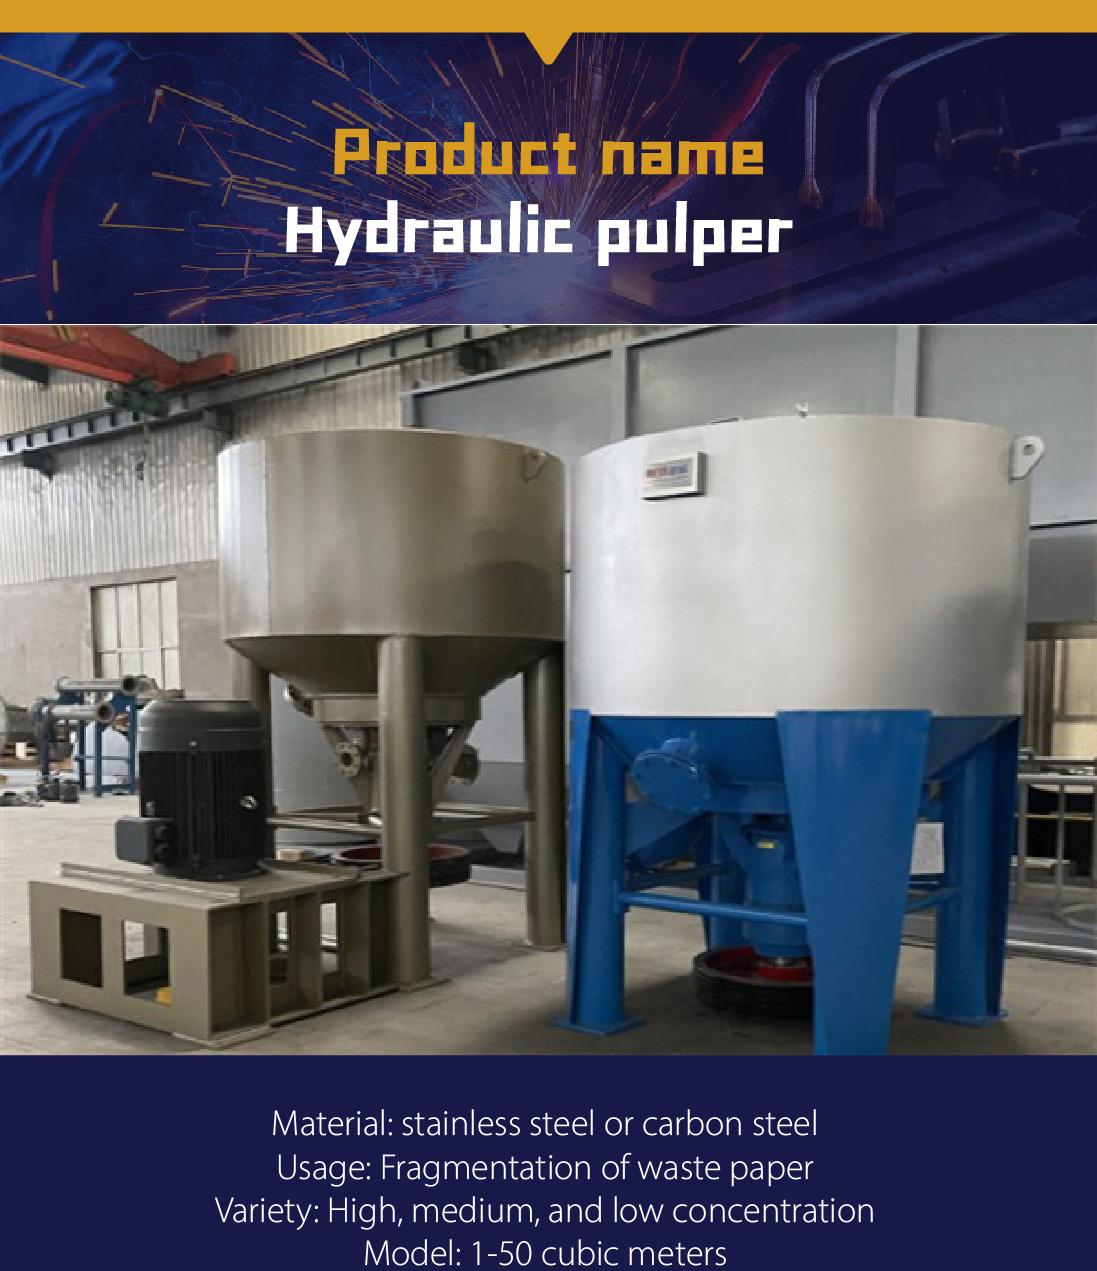 Hydraulic pulper